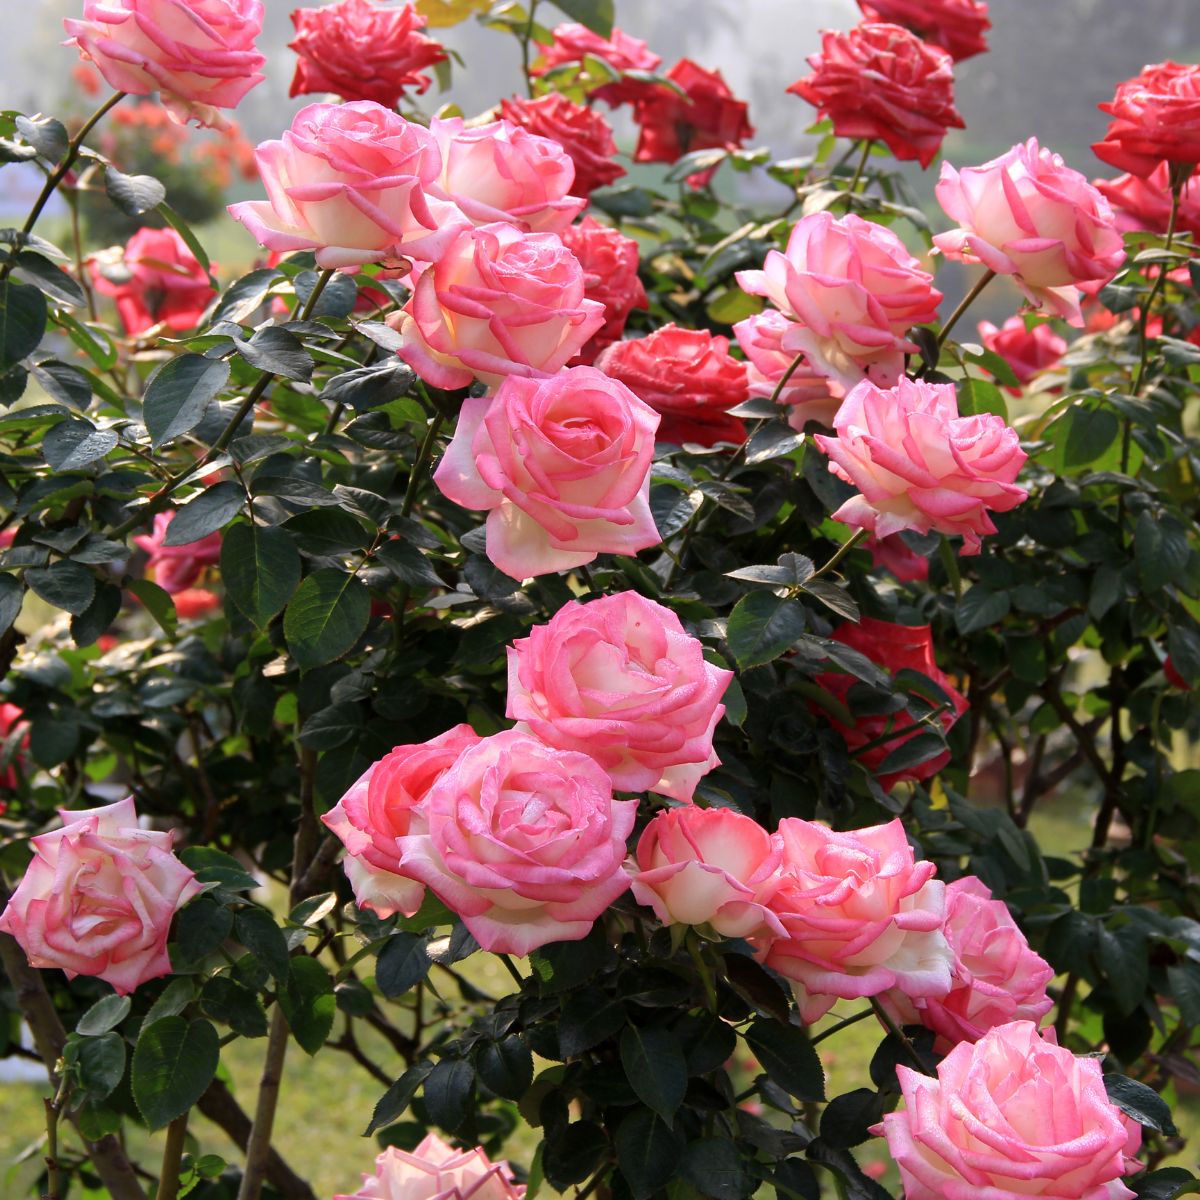 Blushing pink roses. 